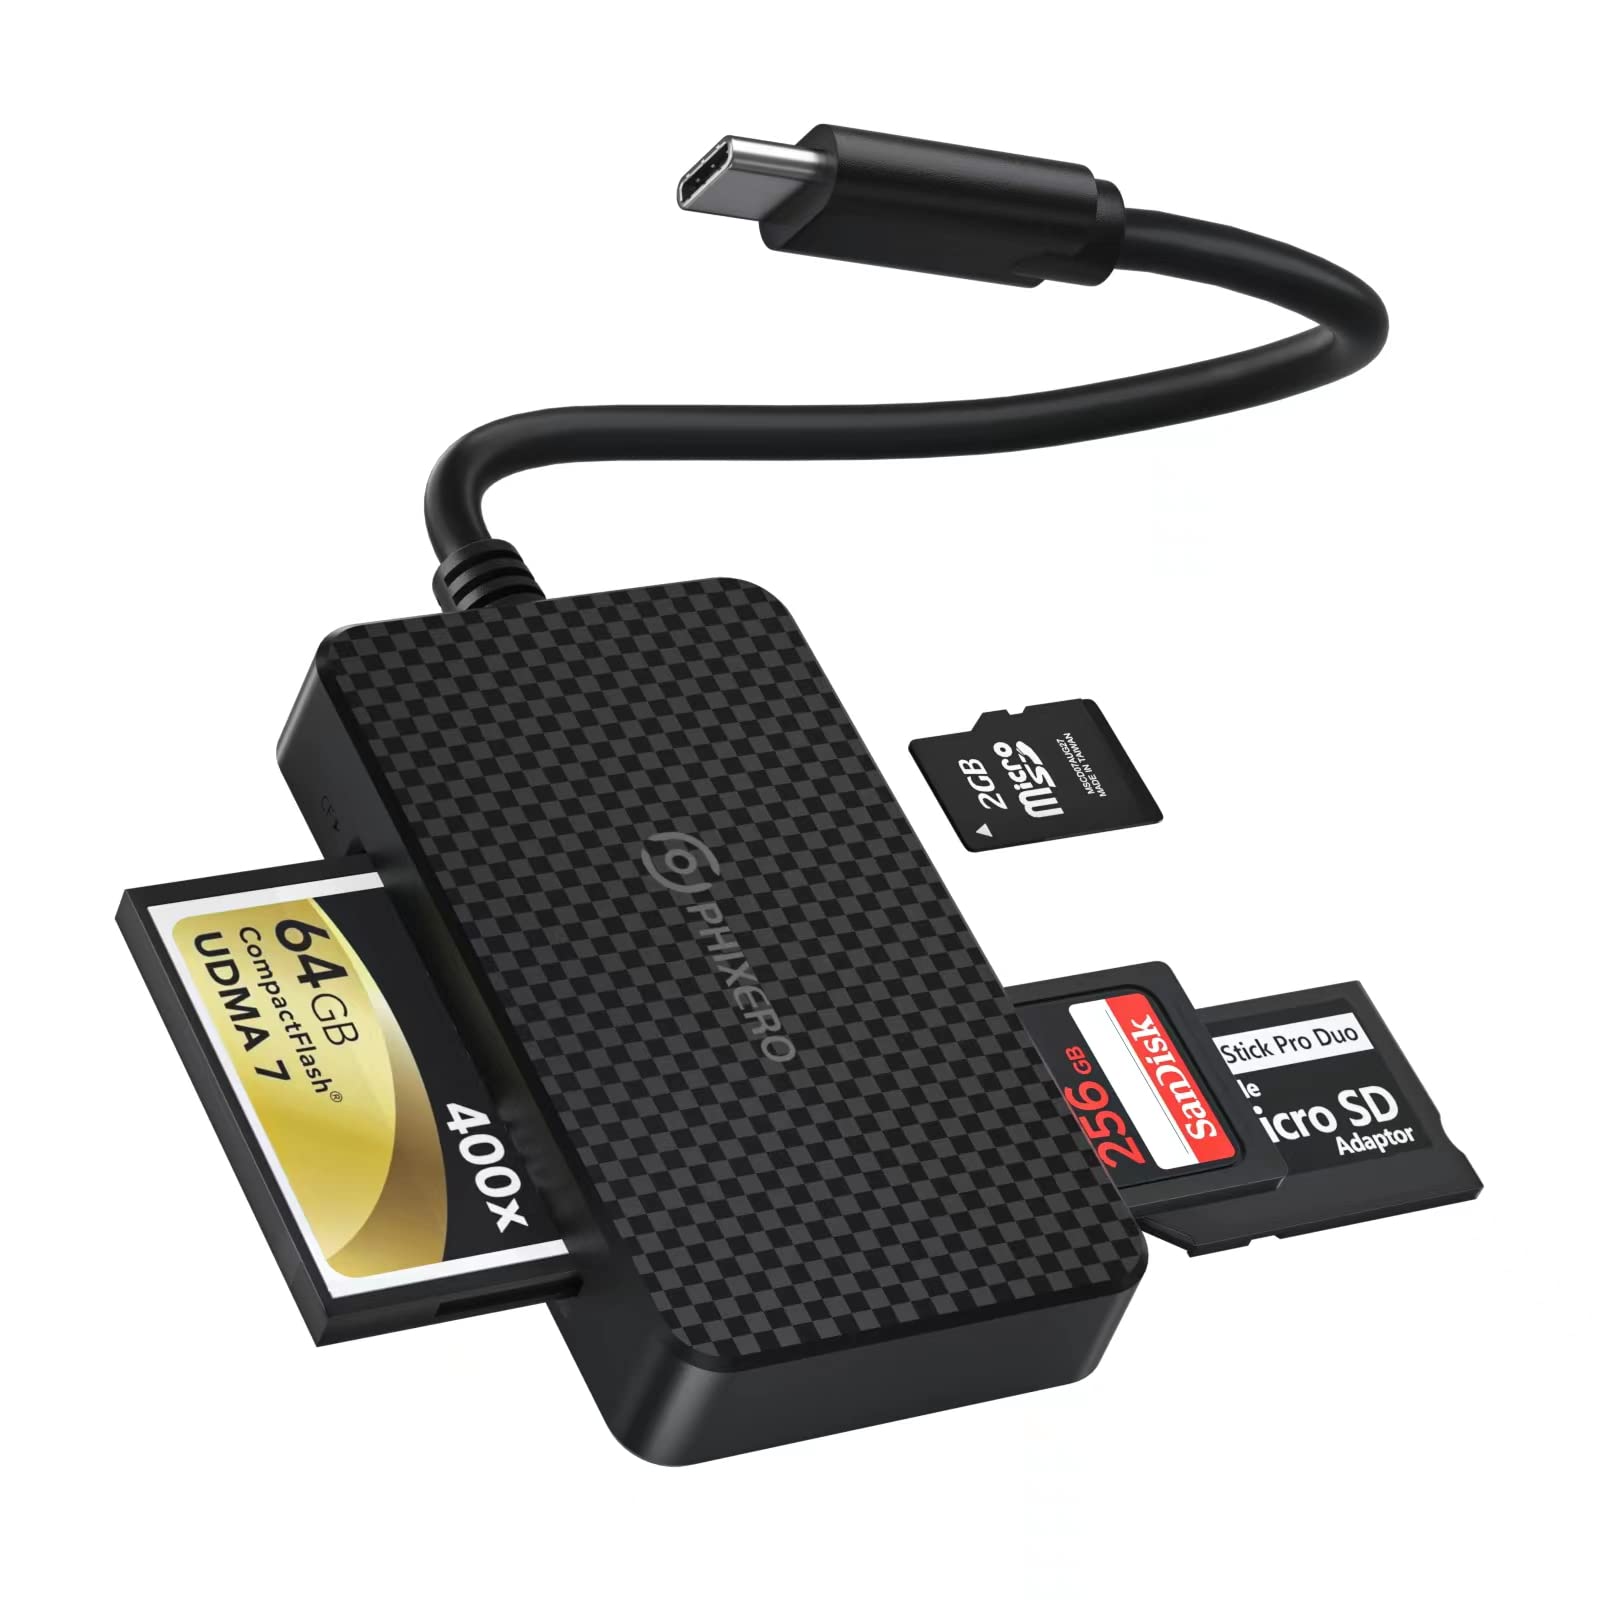 PHIXERO SD Kartenleser für Kamera Speicherkarte, 4 in 1 Micro SD/CF/MS/SD Kartenleser USB C mit 5 Gbps Super Speed Speicherkartenleser Kompatibel mit Laptop, Telefon mit USB-C Port und mehr Geräten